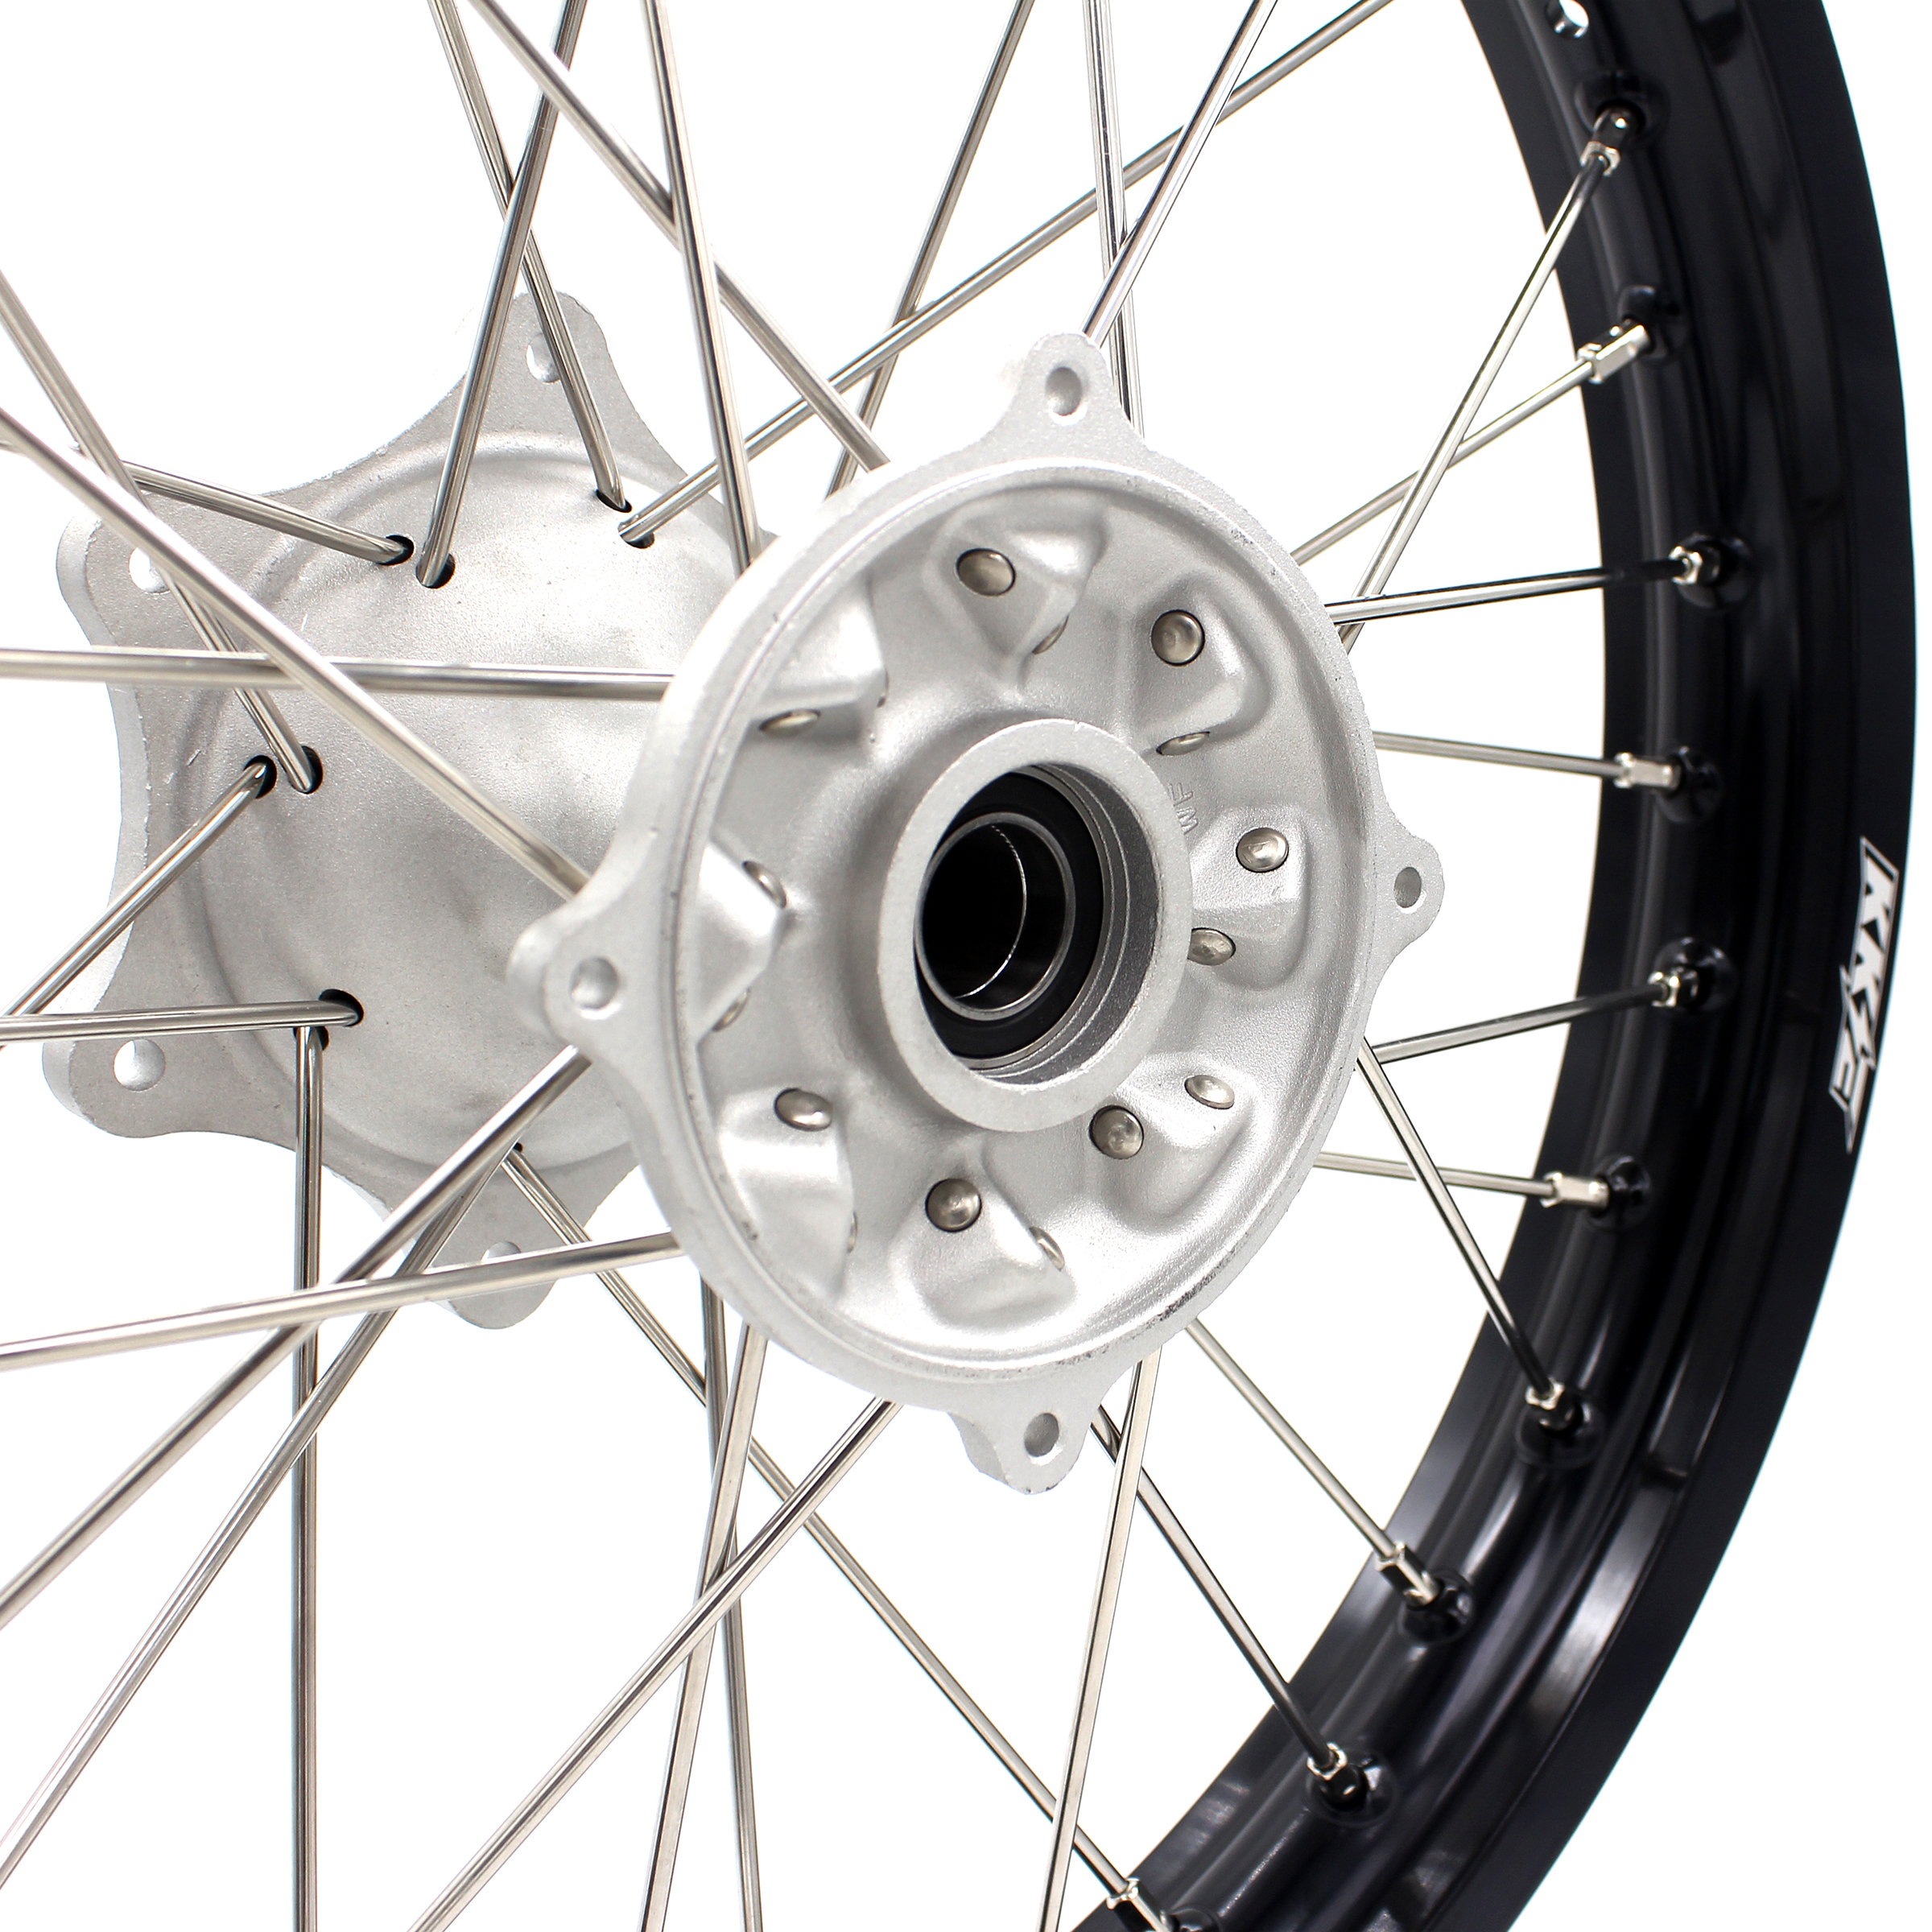 KKE 21/19 MX Motorcycle Wheels Rim Set Fit HONDA CRF250R 2014-2024